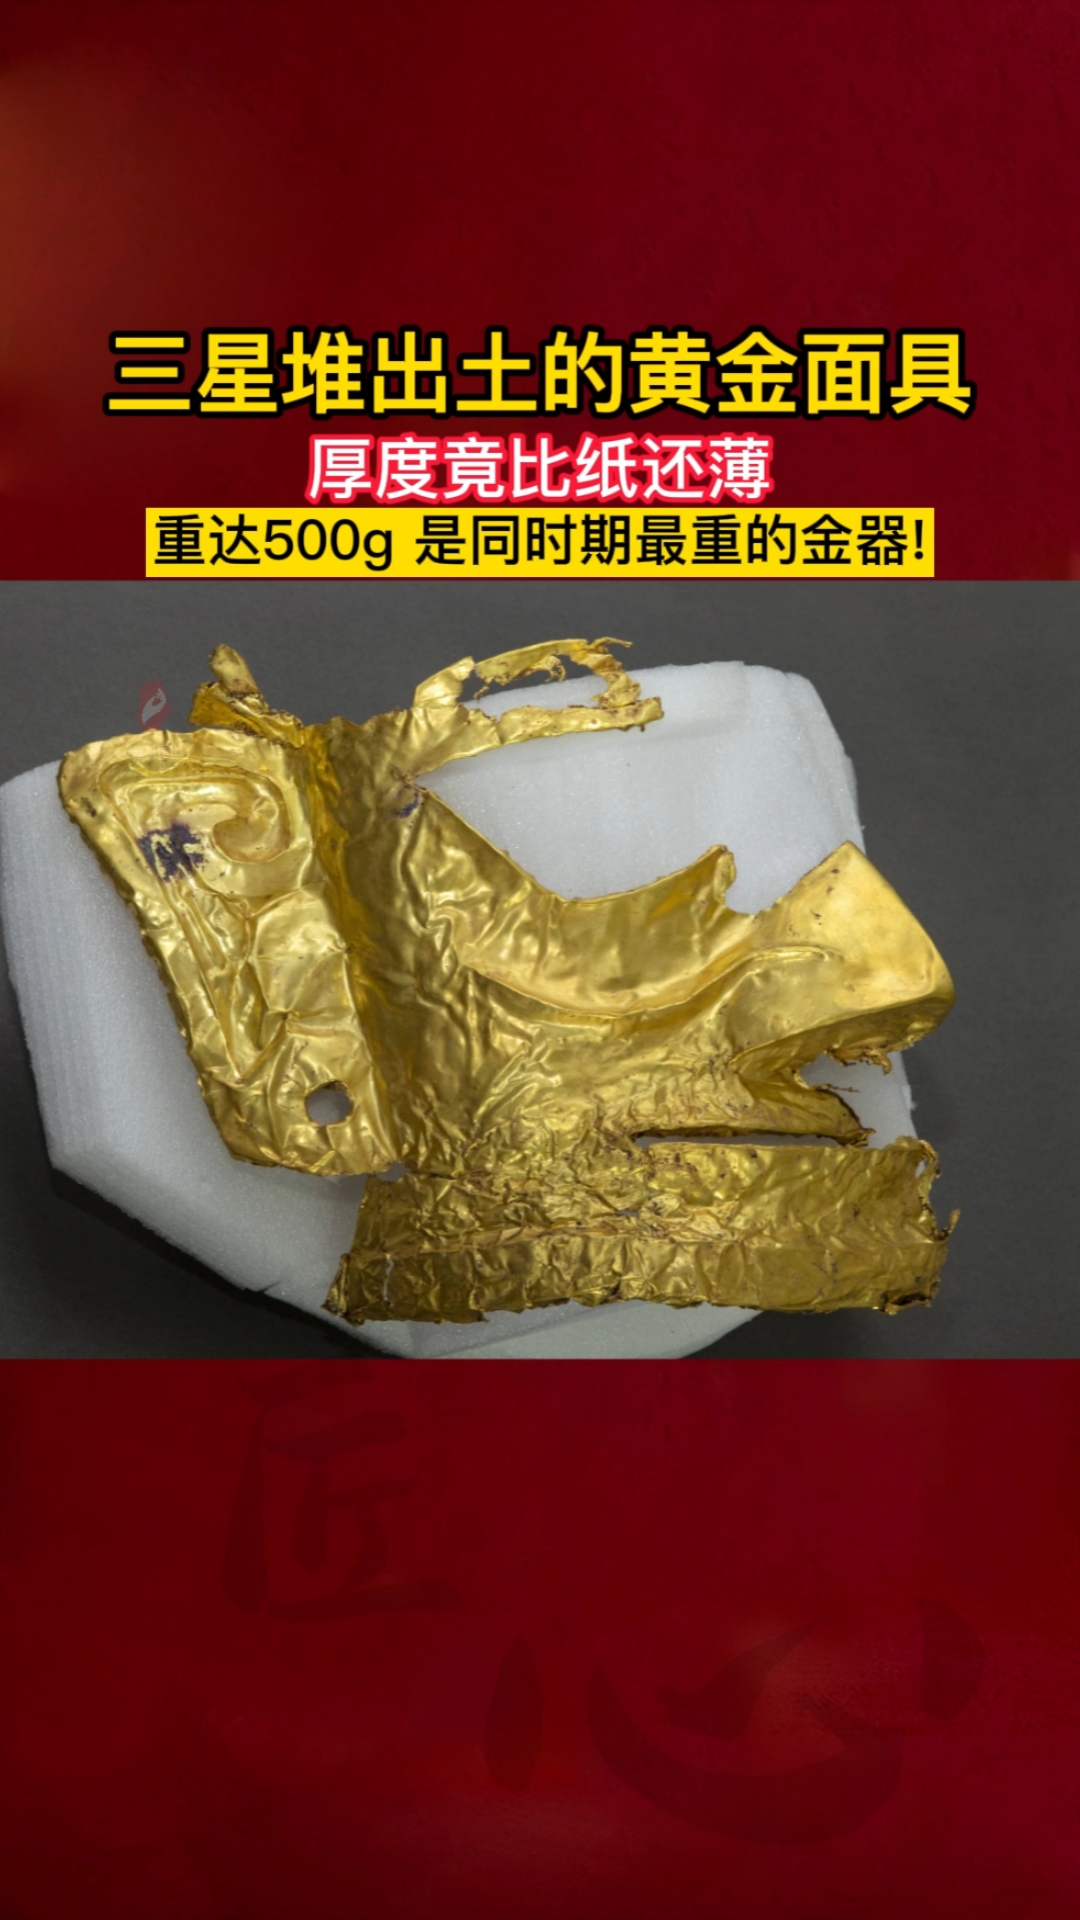 传统文化三星堆出土的黄金面具厚度竟比纸还薄重达500g是同时期最重的